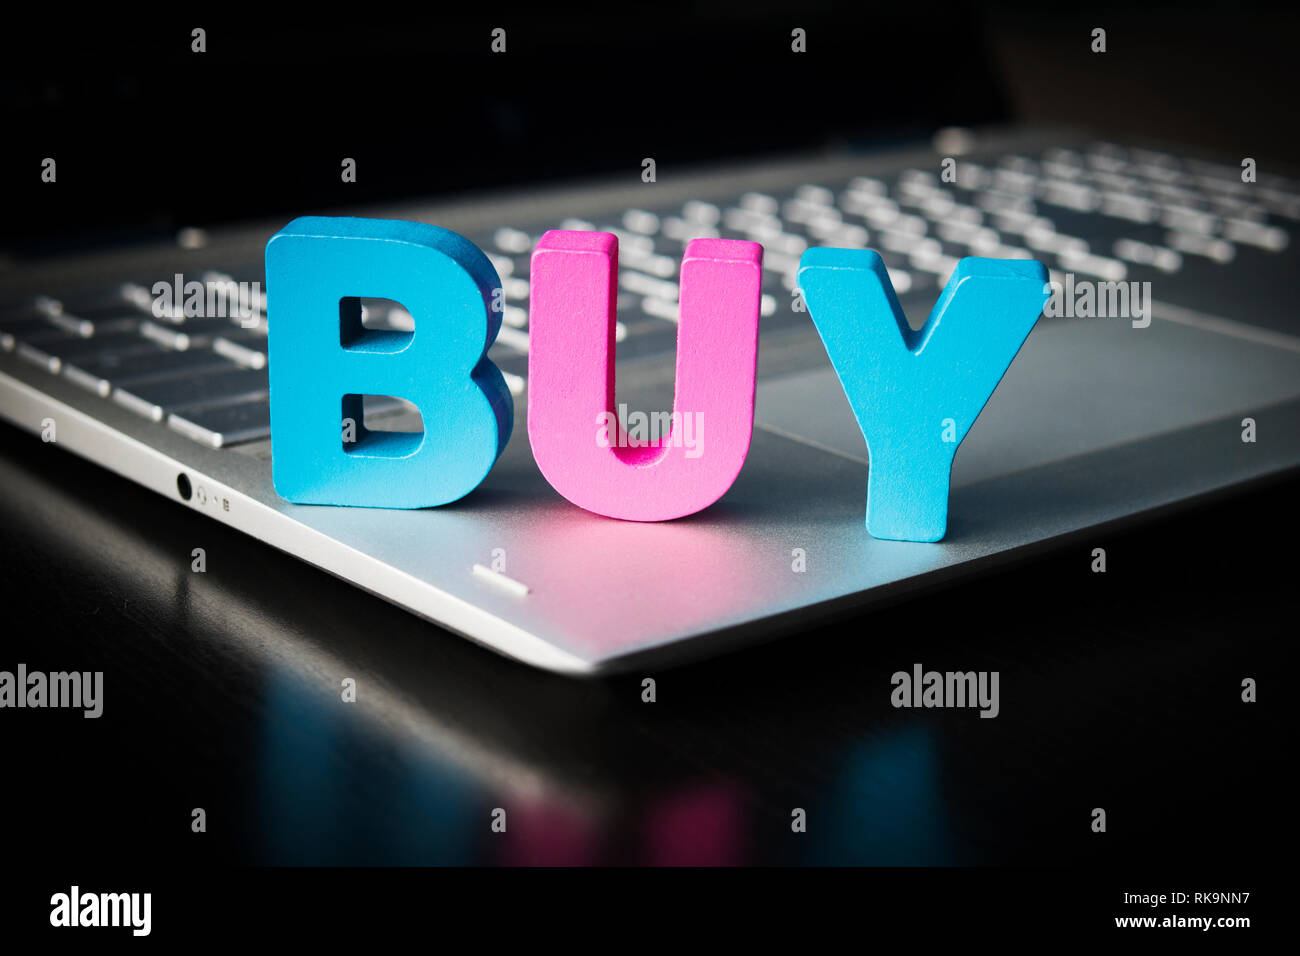 Kaufen Wort auf Laptop unten am schwarzen Hintergrund. Holz- bunte Buchstaben B, U, Y auf geöffnet Notebook gesetzt. Konzept des Kaufens Dinge im Internet. Online sh Stockfoto